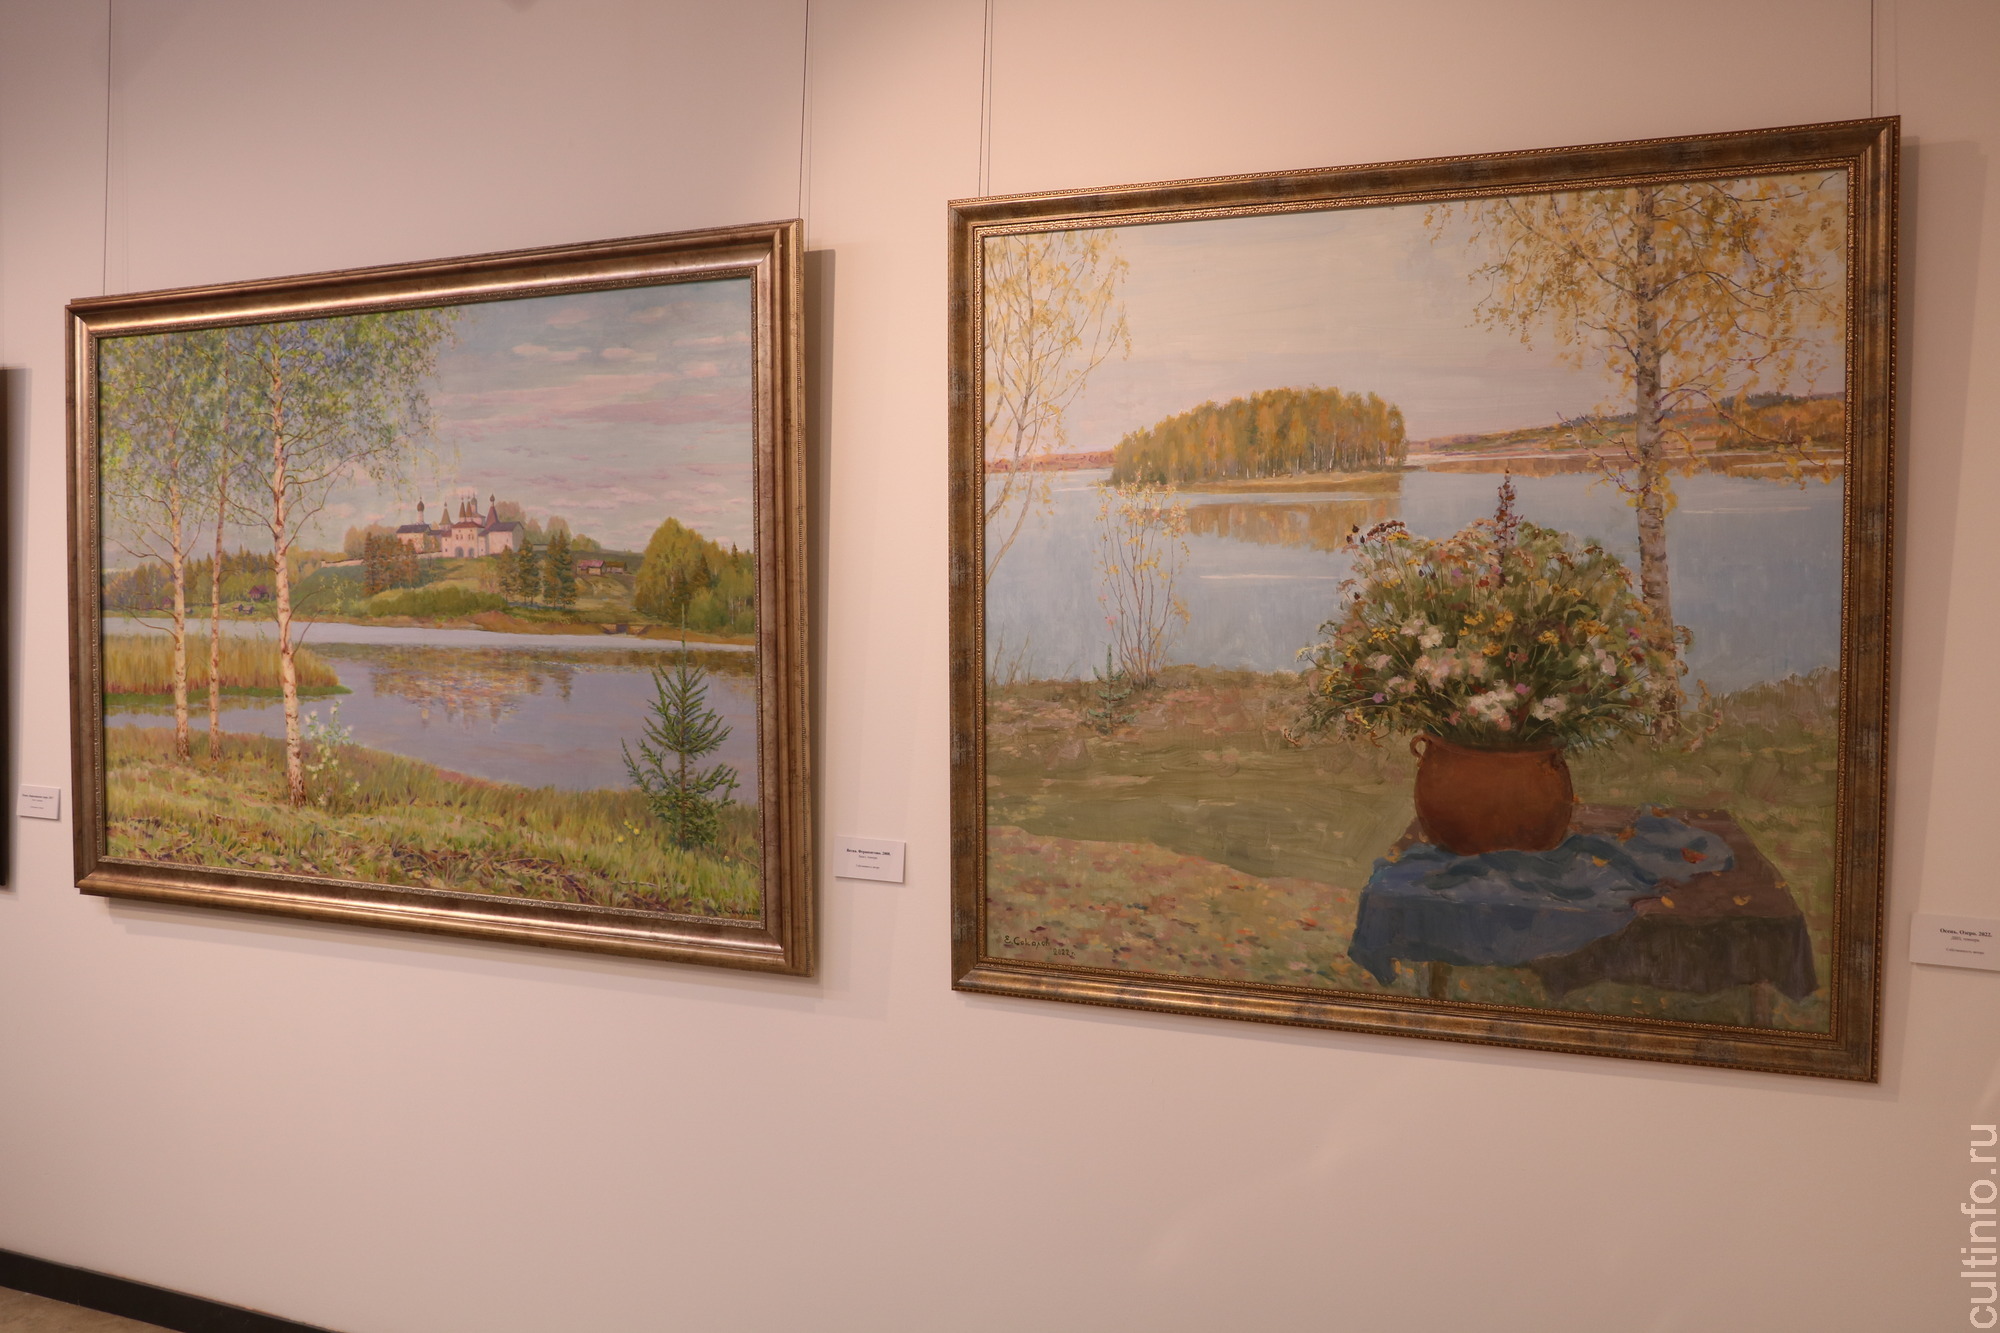 Красоту родного края показывает на юбилейной выставке вологодский живописец Евгений Соколов